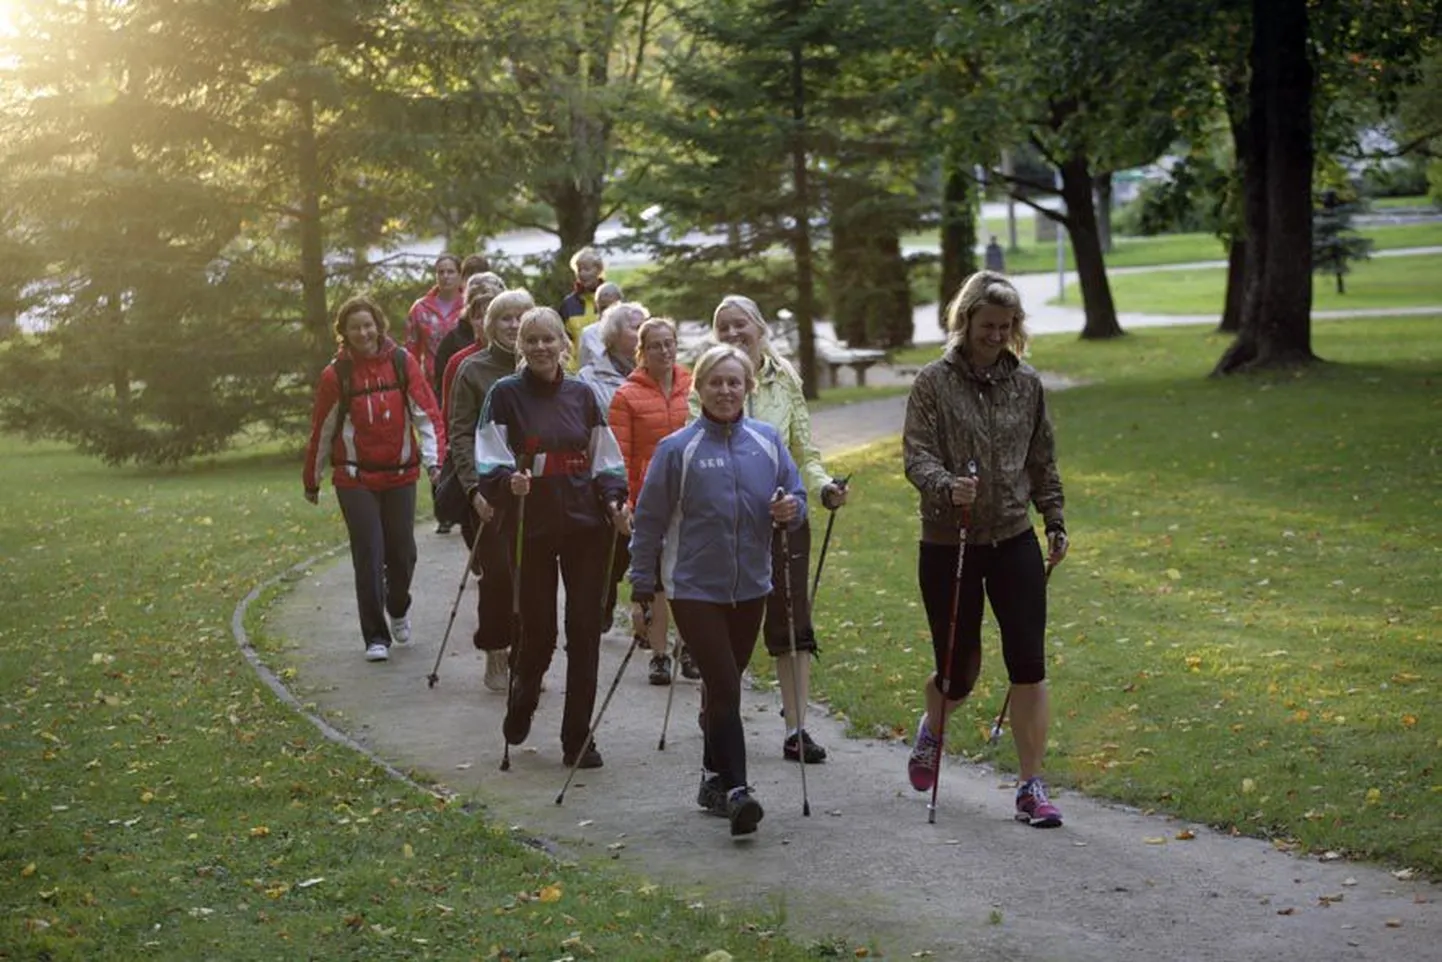 Скандинавская ходьба - прекрасный вид спорта, который подходит практически всем. Заниматься можно как с группой, так и в одиночку. Иллюстративное фото.